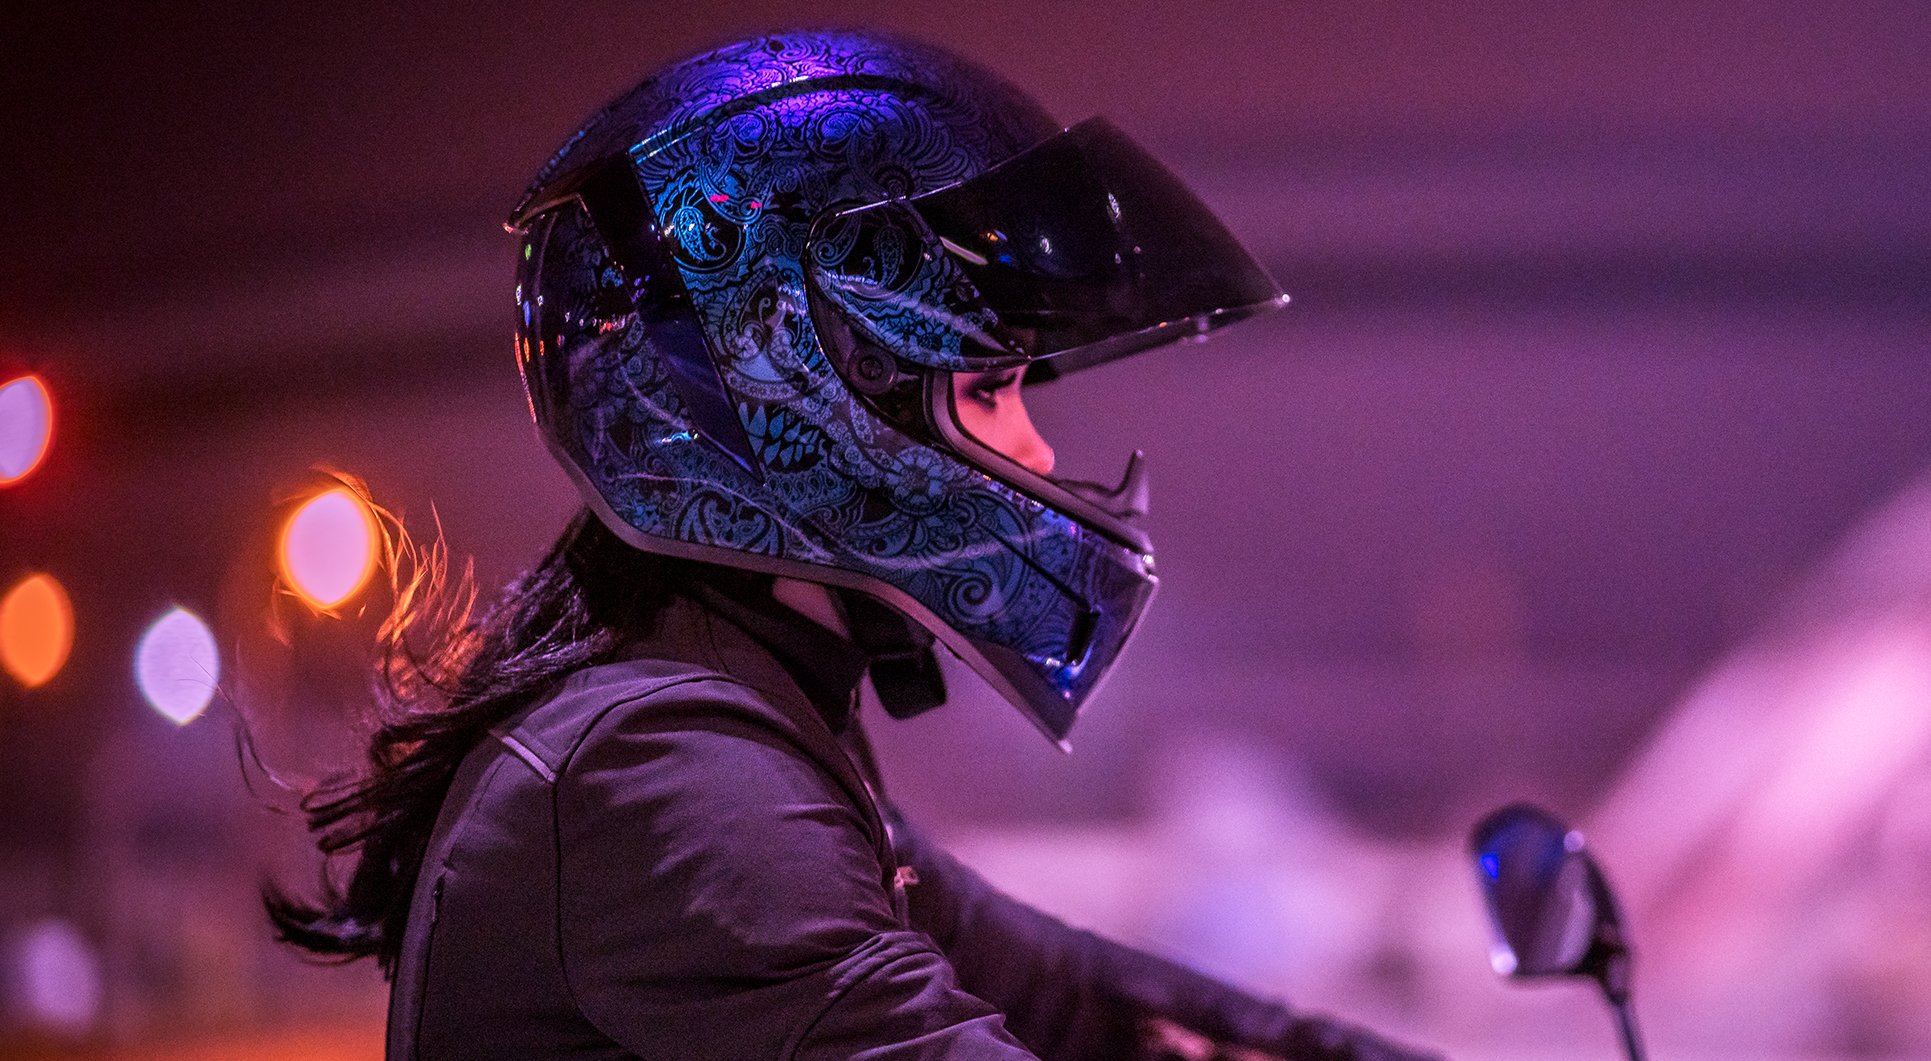 Quel casque moto pour femme choisir ? - Live Love Ride - Le blog iCasque